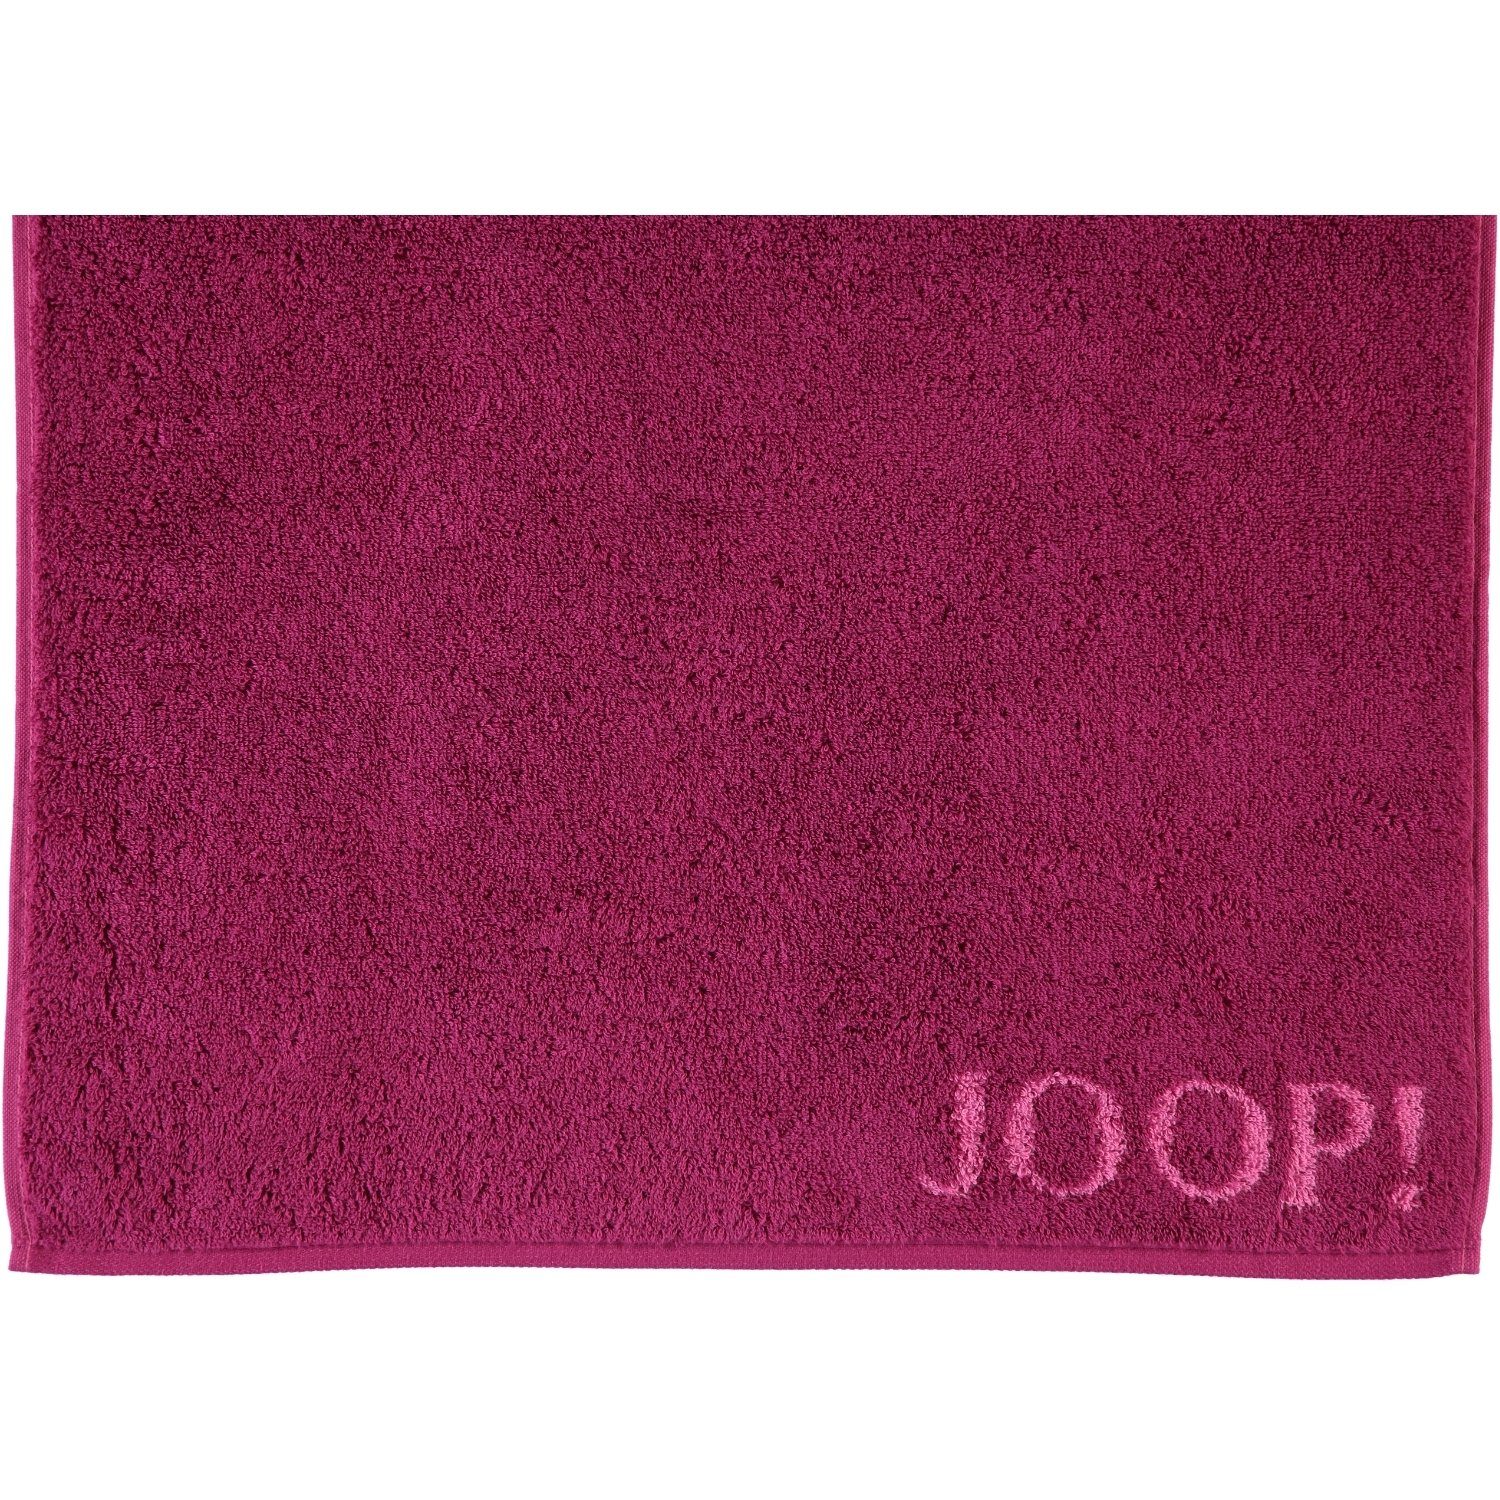 Joop! - cassis 1600, Baumwolle 22 Classic 100% Handtücher Doubleface